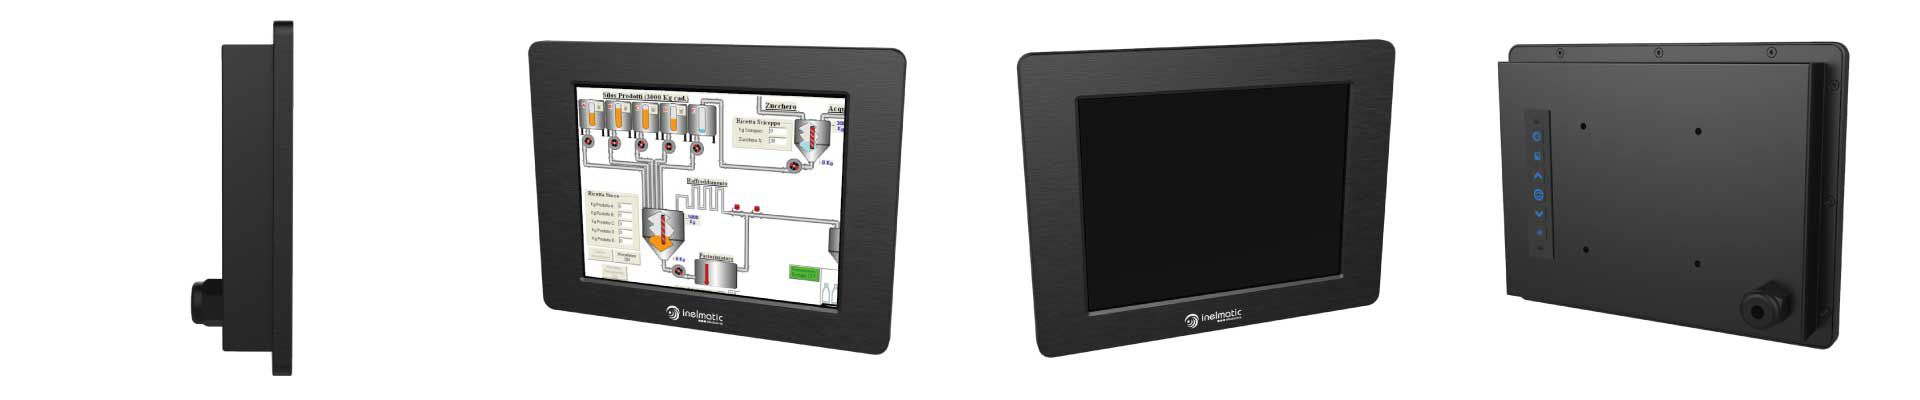 Monitor industrial con pantalla de 8 pulgadas - Inelmatic